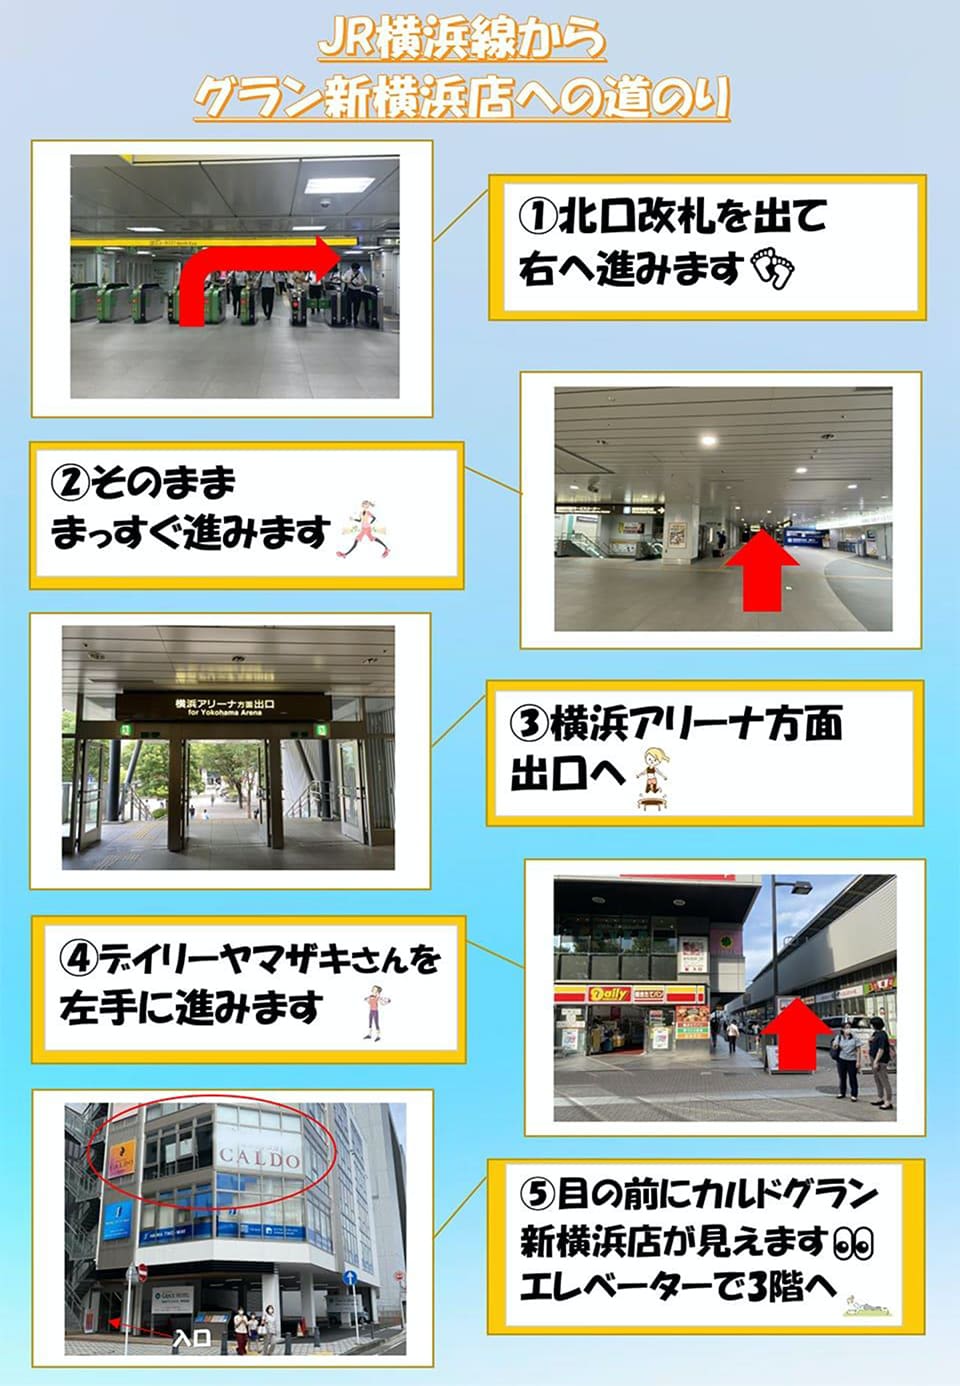 JR横浜線からグラン新横浜店への道のり：北口改札を出て右へ進みます→そのまままっすぐ進みます→横浜アリーナ方面出口へ→デイリーヤマザキさんを左手に進みます→目の前にカルドグラン新横浜店が見えます。エレベーターで3階へ